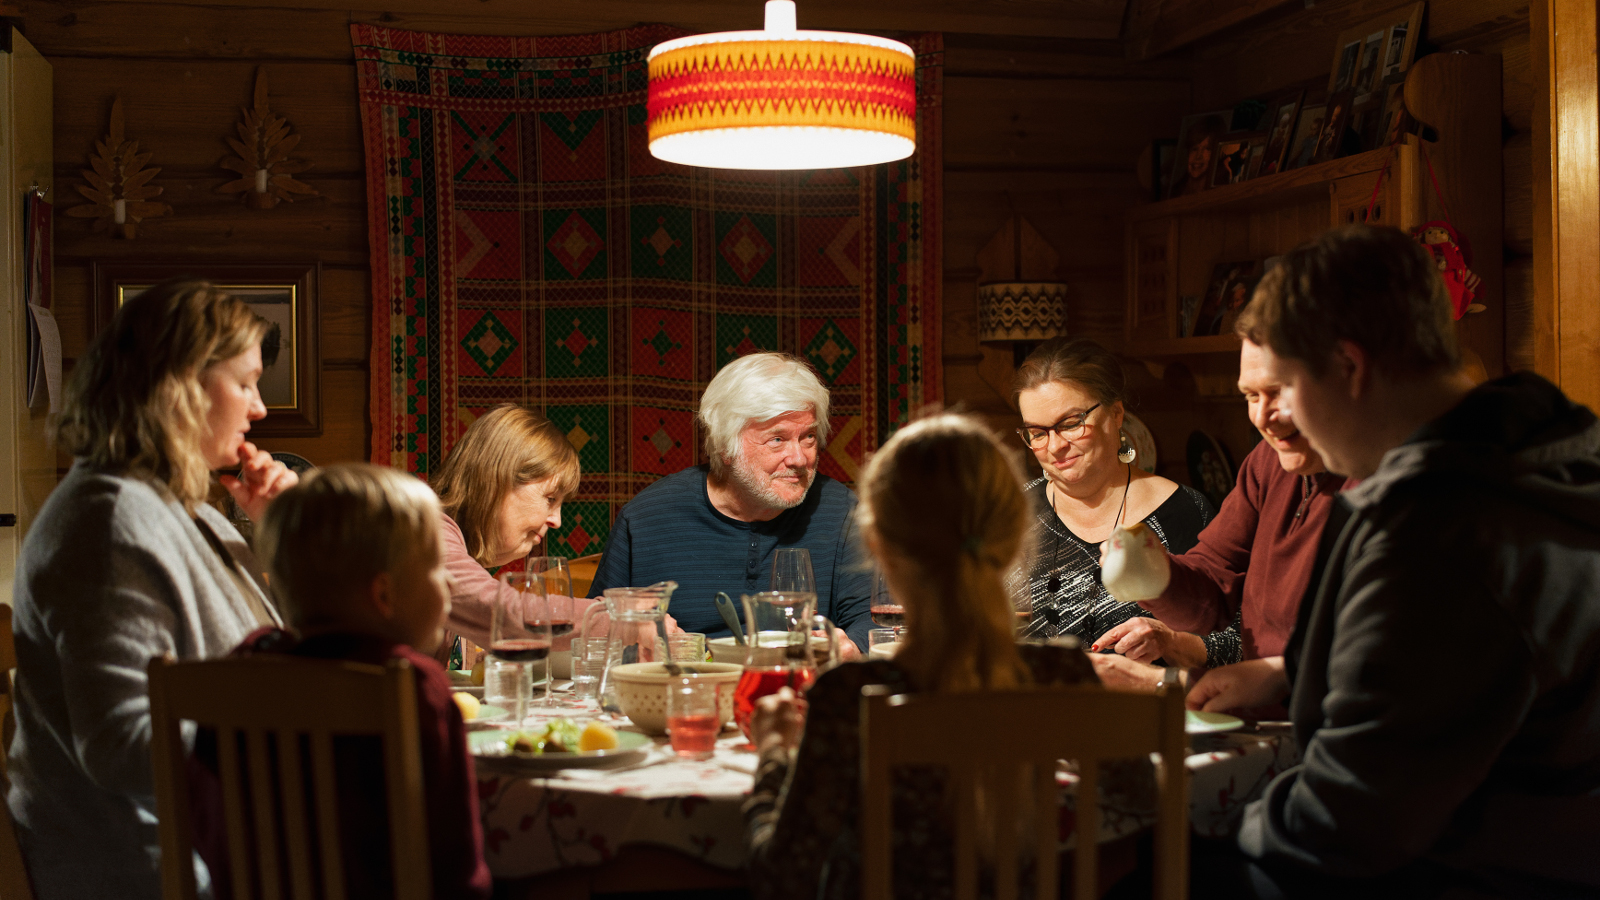 Kuvassa ovat Riia Kataja, Leena Uotila, Tom Wenzel, Elina Knihtilä ja Jarkko Pajunen syömässä joulupöydän ääressä.  Pöydällä on ruokaa ja valaistus on tummahko keltavaloinen.